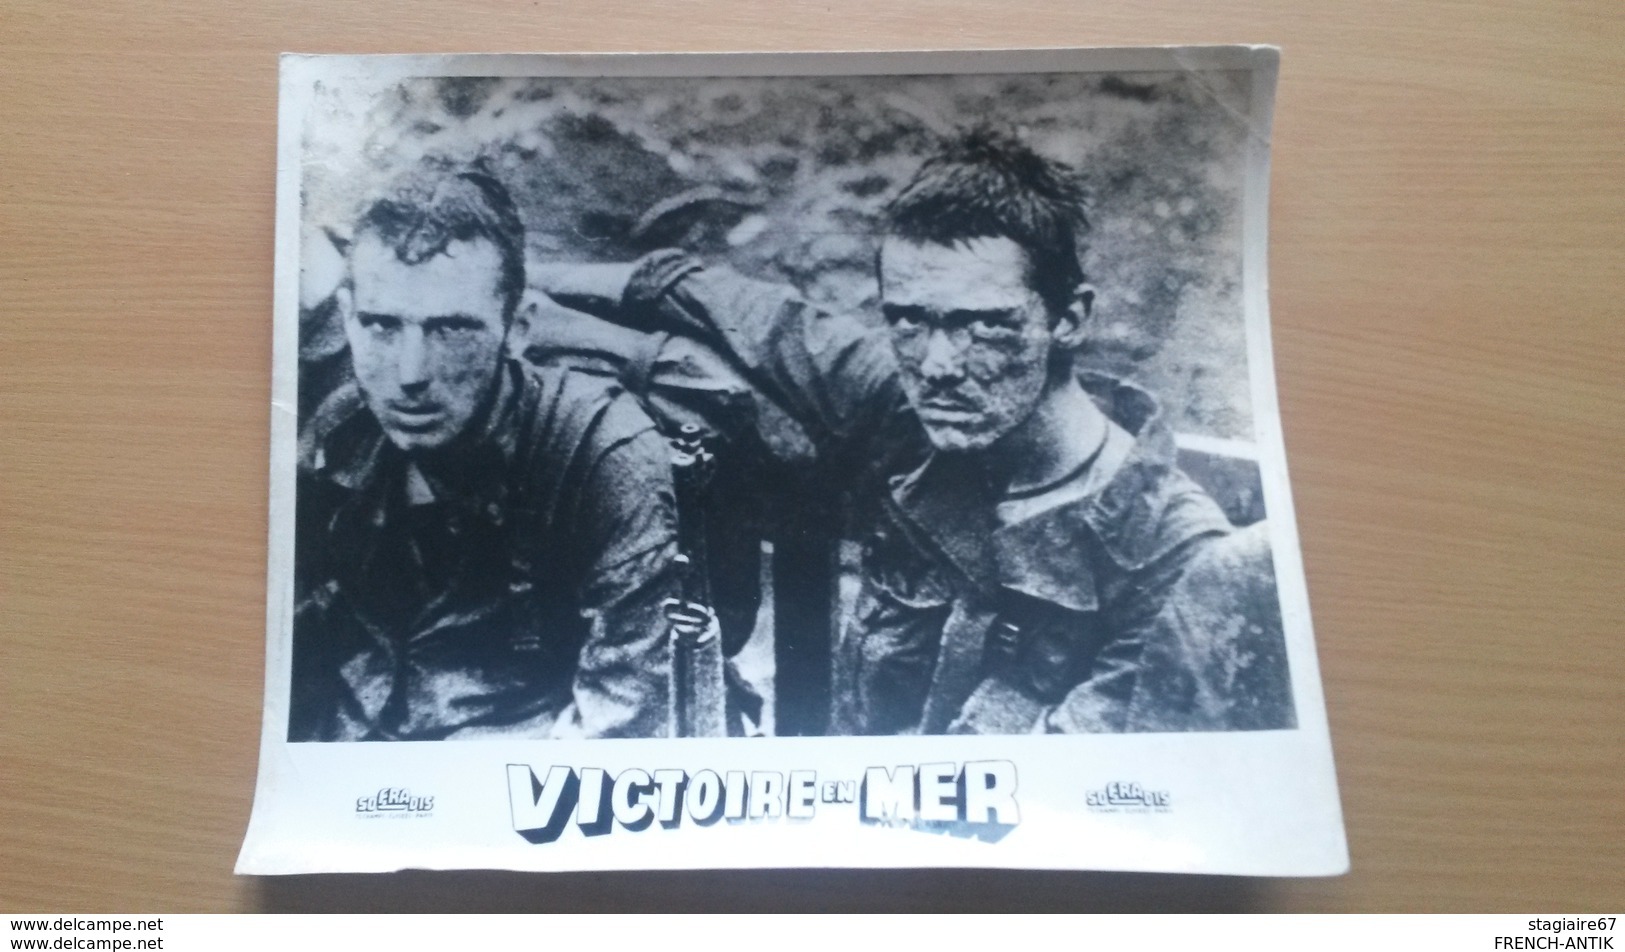 AFFICHETTE FILM DE GUERRE VICTOIRE EN MER SOFRADIS - Plakate